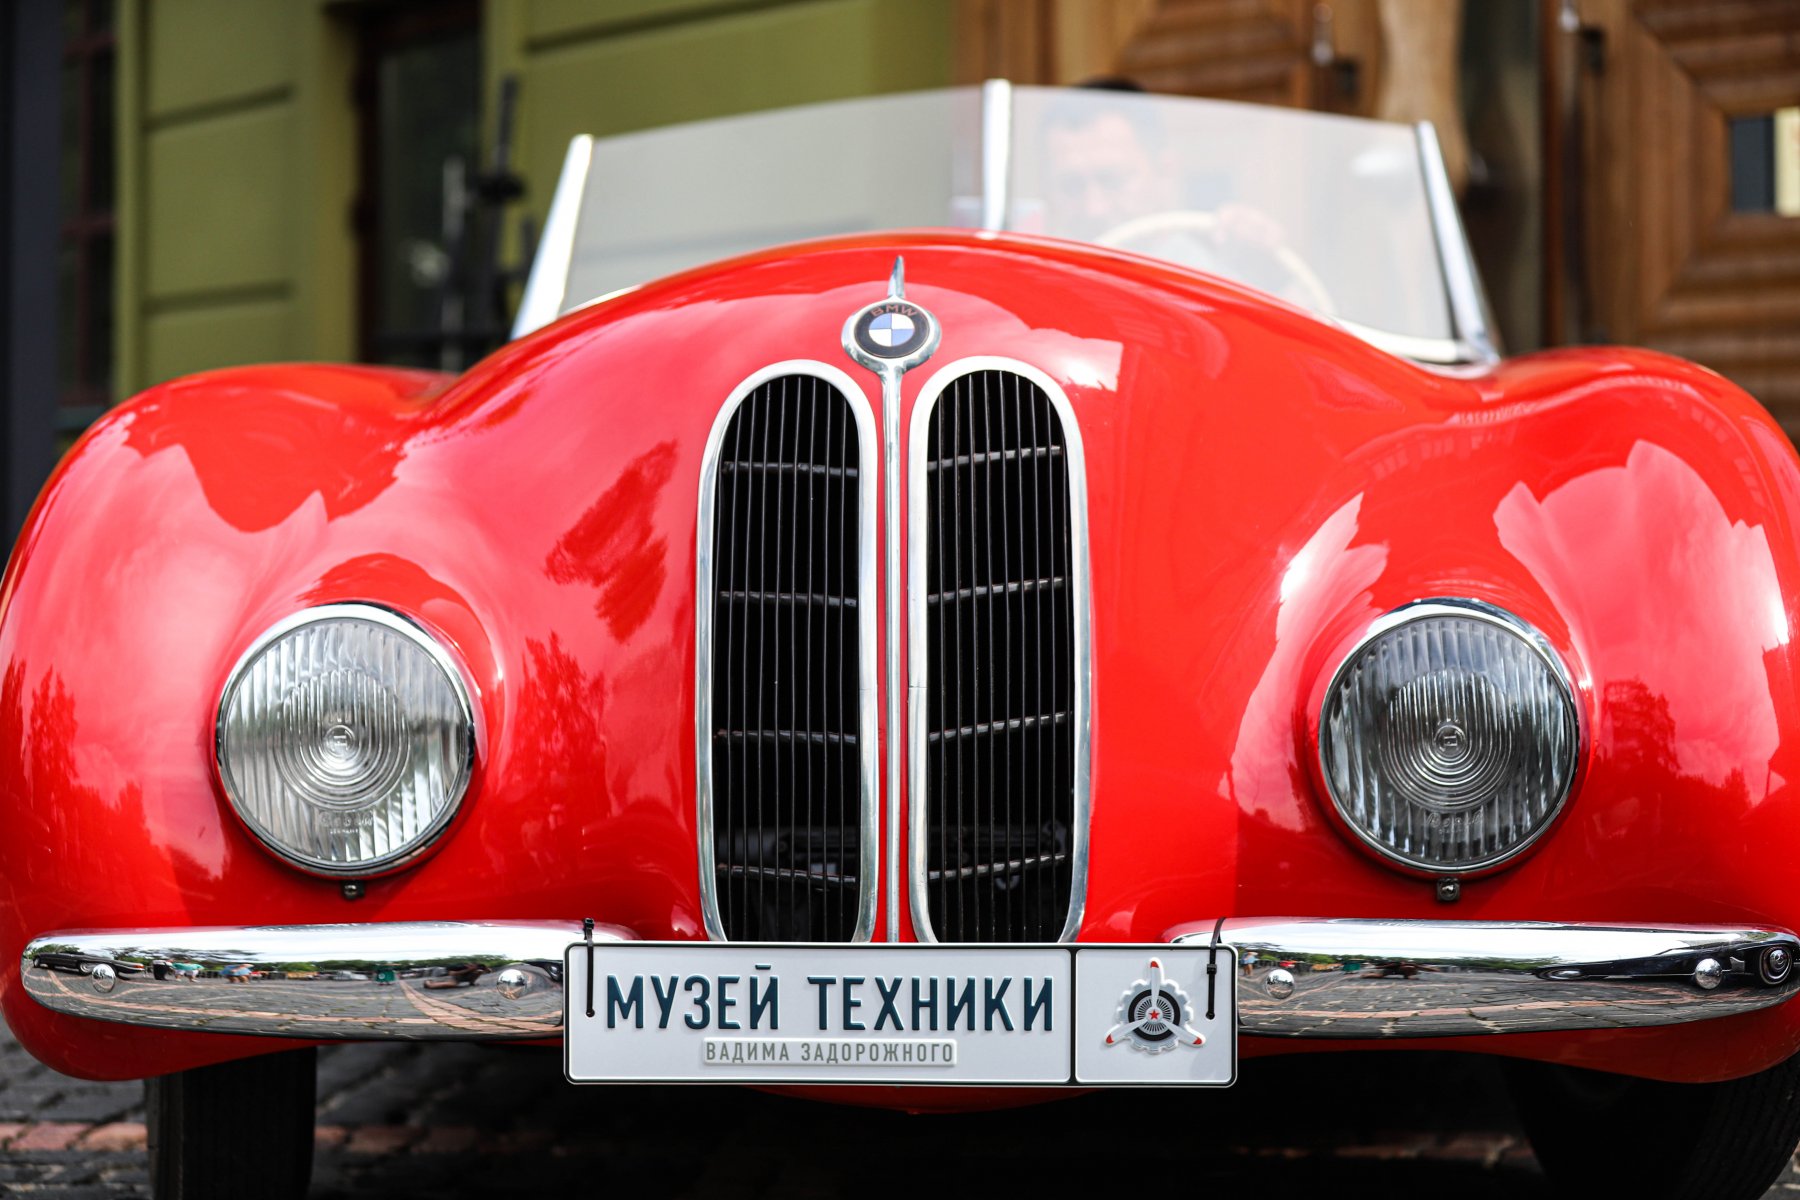 К ралли на приз Музея техники Вадима Задорожного присоединились свыше 30 ретро-автомобилей 